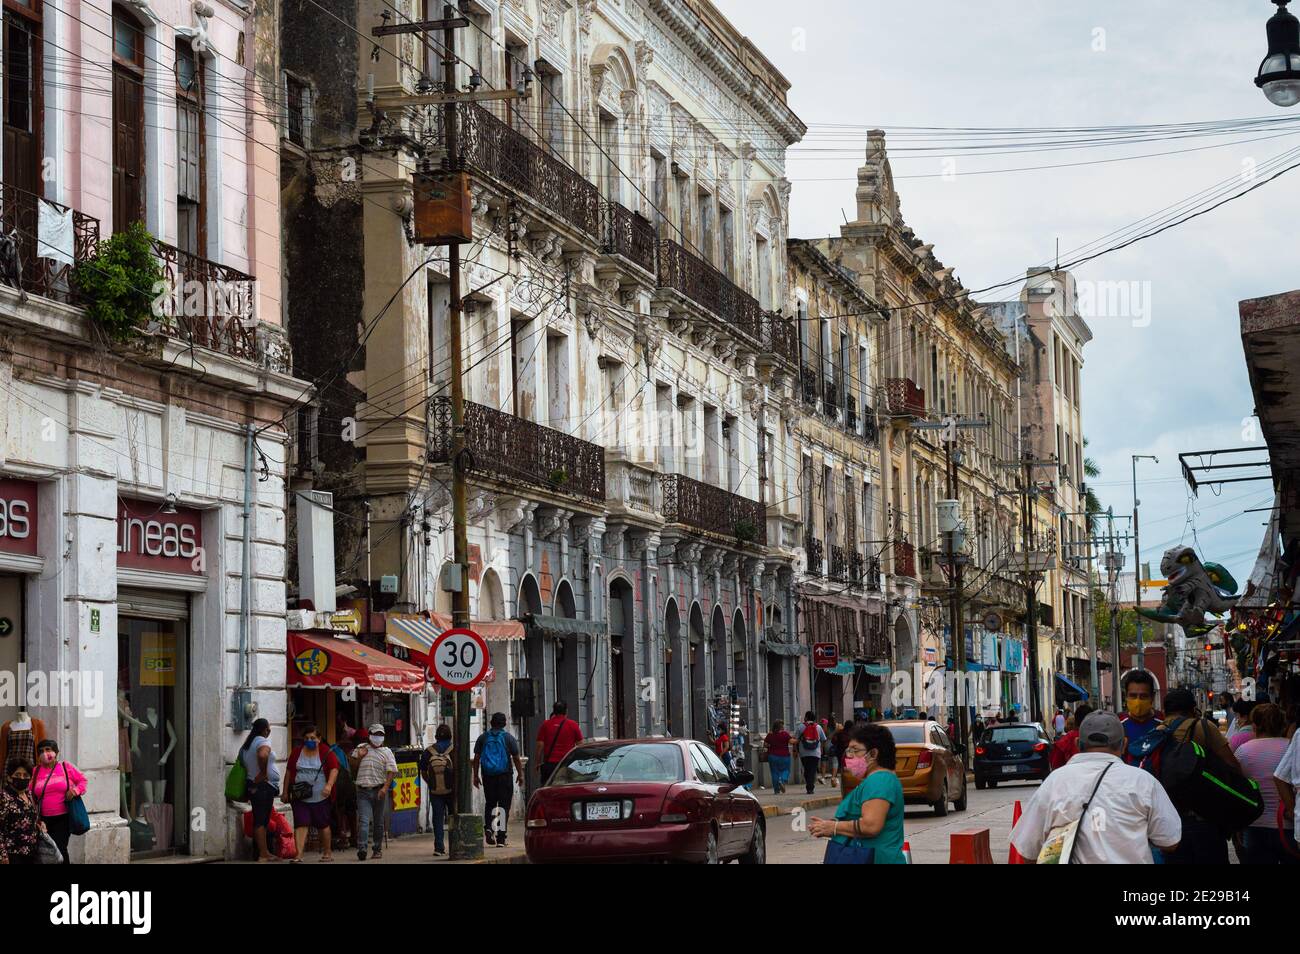 Calle del centro de Mérida, Yucatán, México. Edificios de estilo colonial francés son parte de la zona. Foto de stock